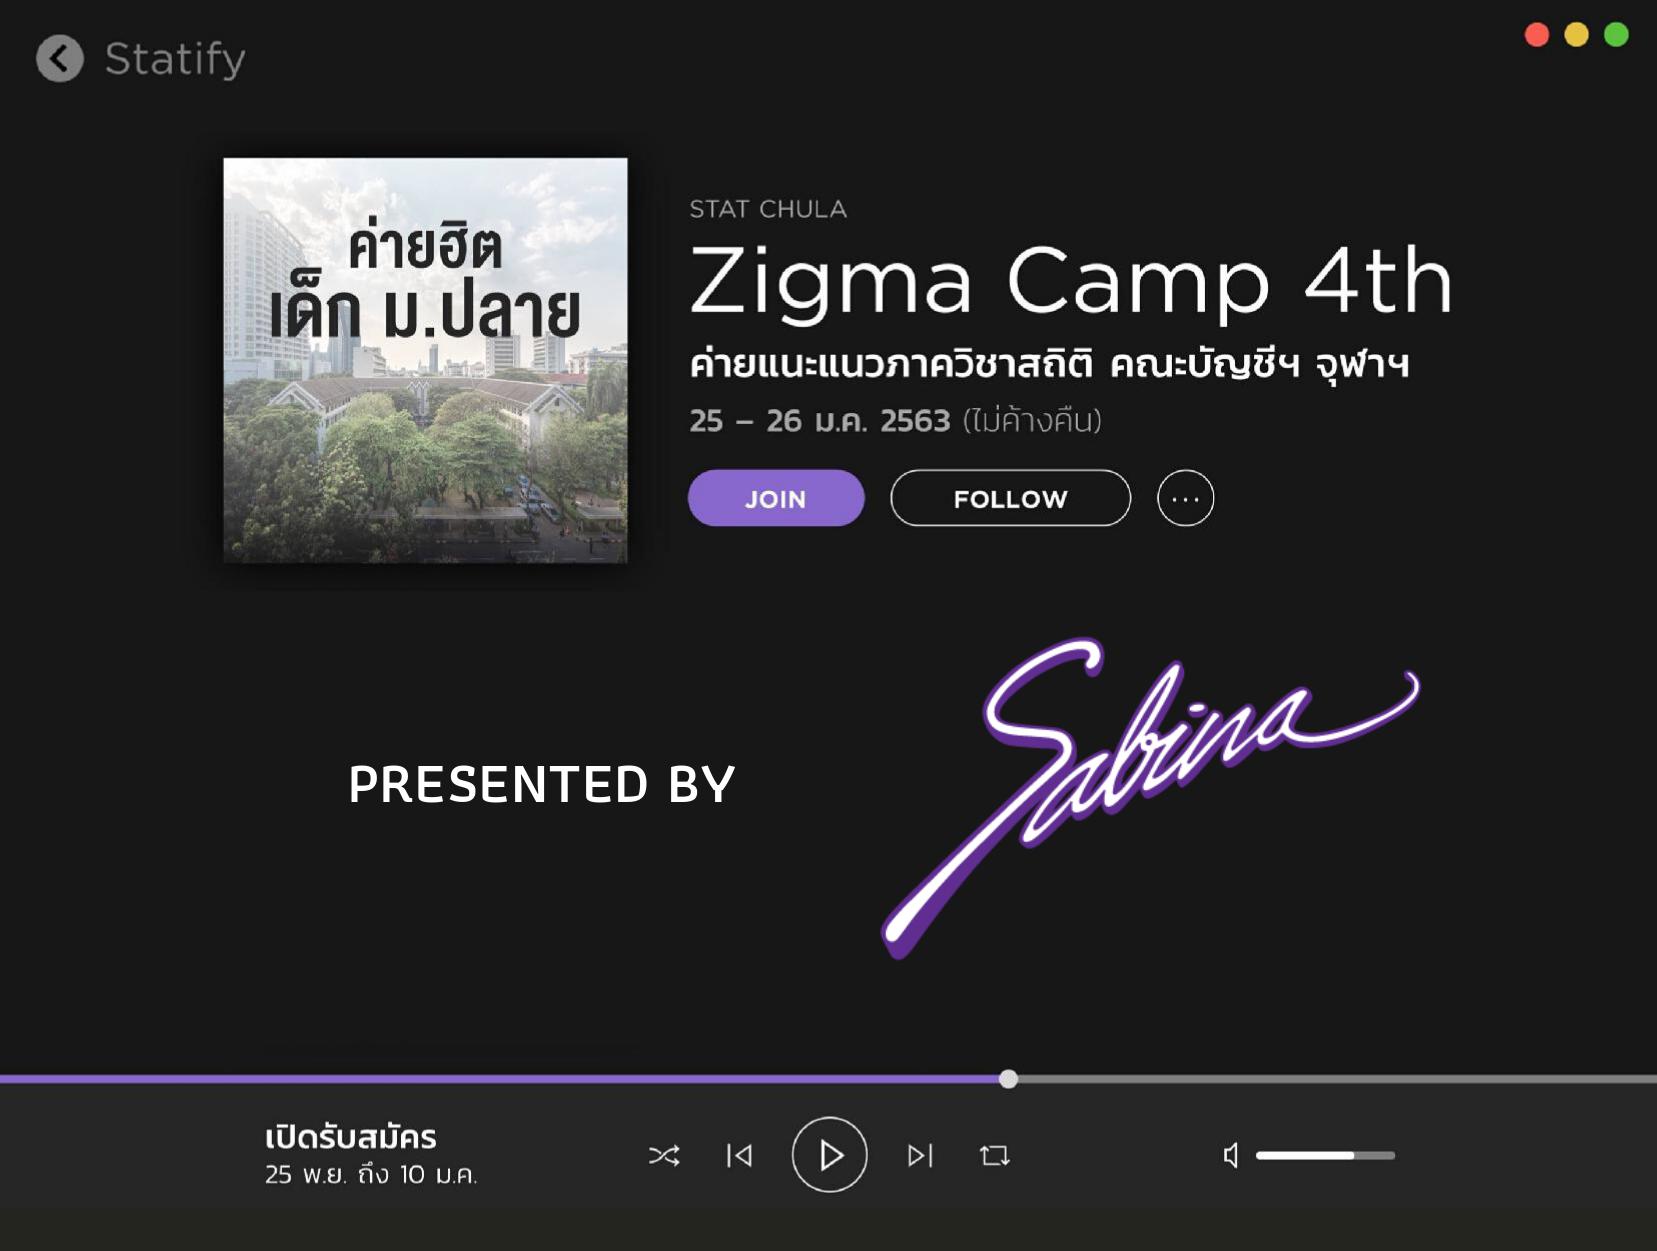 บริษัท ซาบีน่า ฟาร์อีสท์ จำกัด  ร่วมเป็นส่วนหนึ่งในการสนับสนุนกิจกรรม “Zigma Camp”